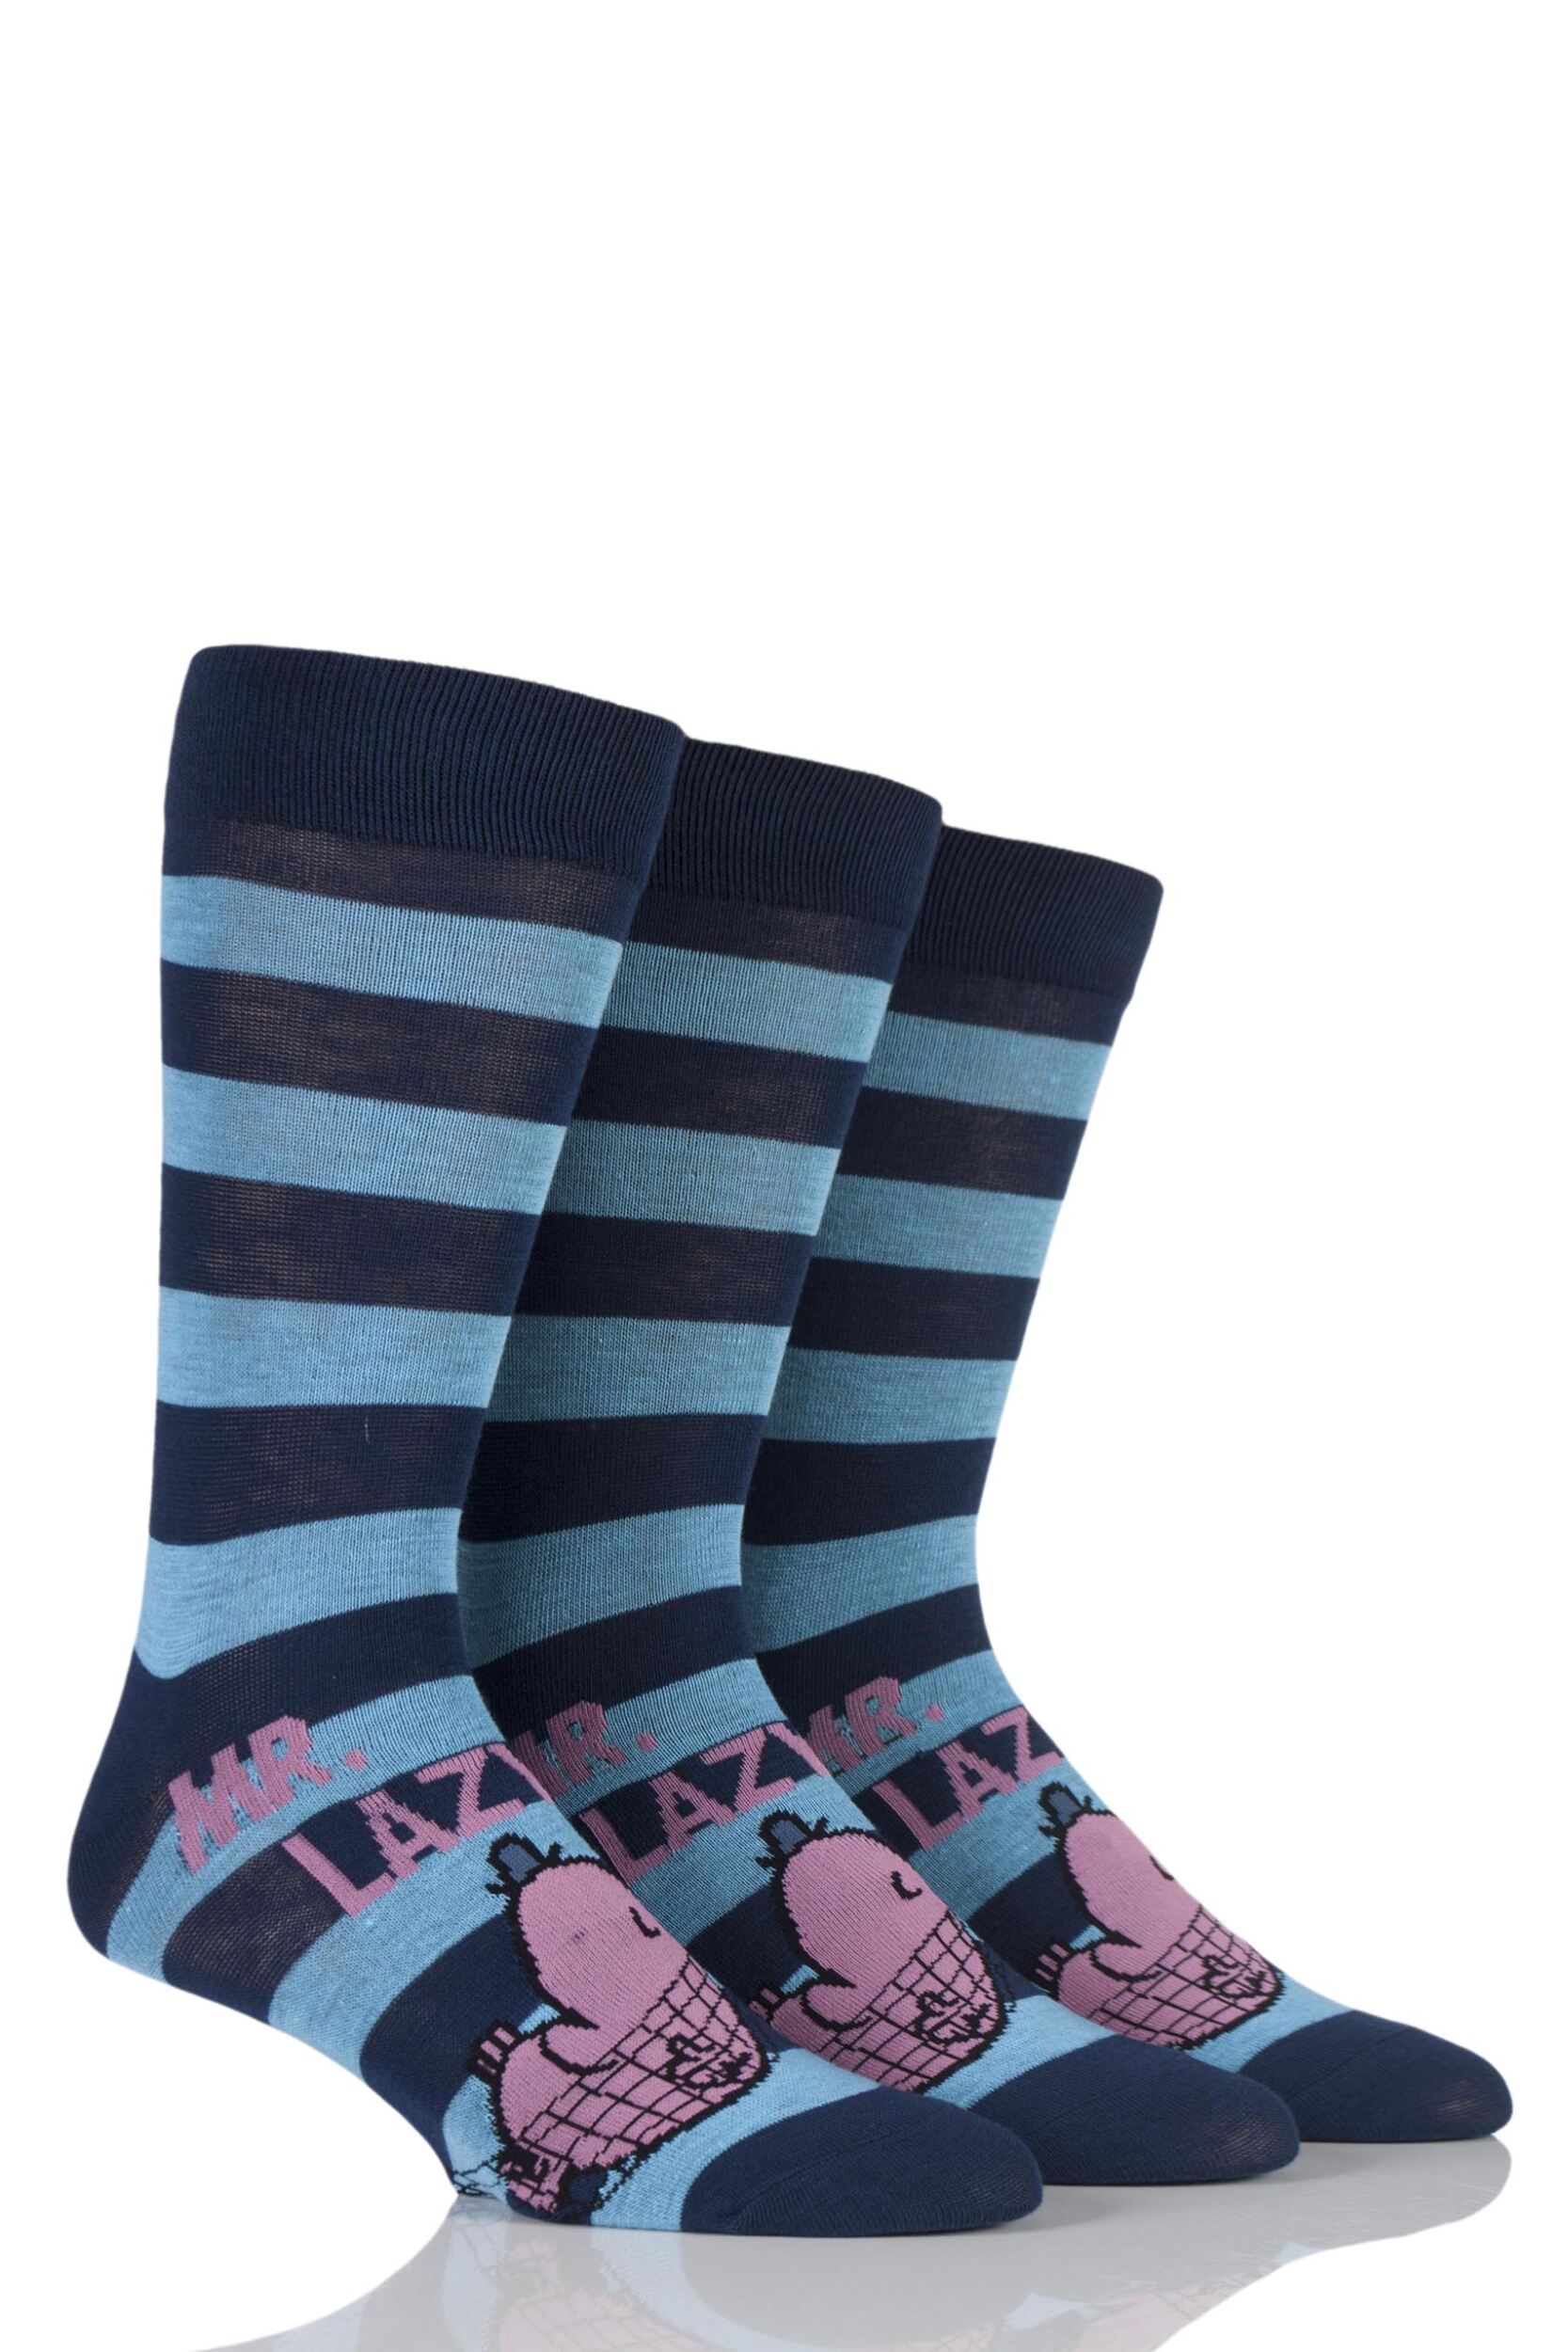 Mens 3 Pair TM Mr. Men Character Socks | eBay